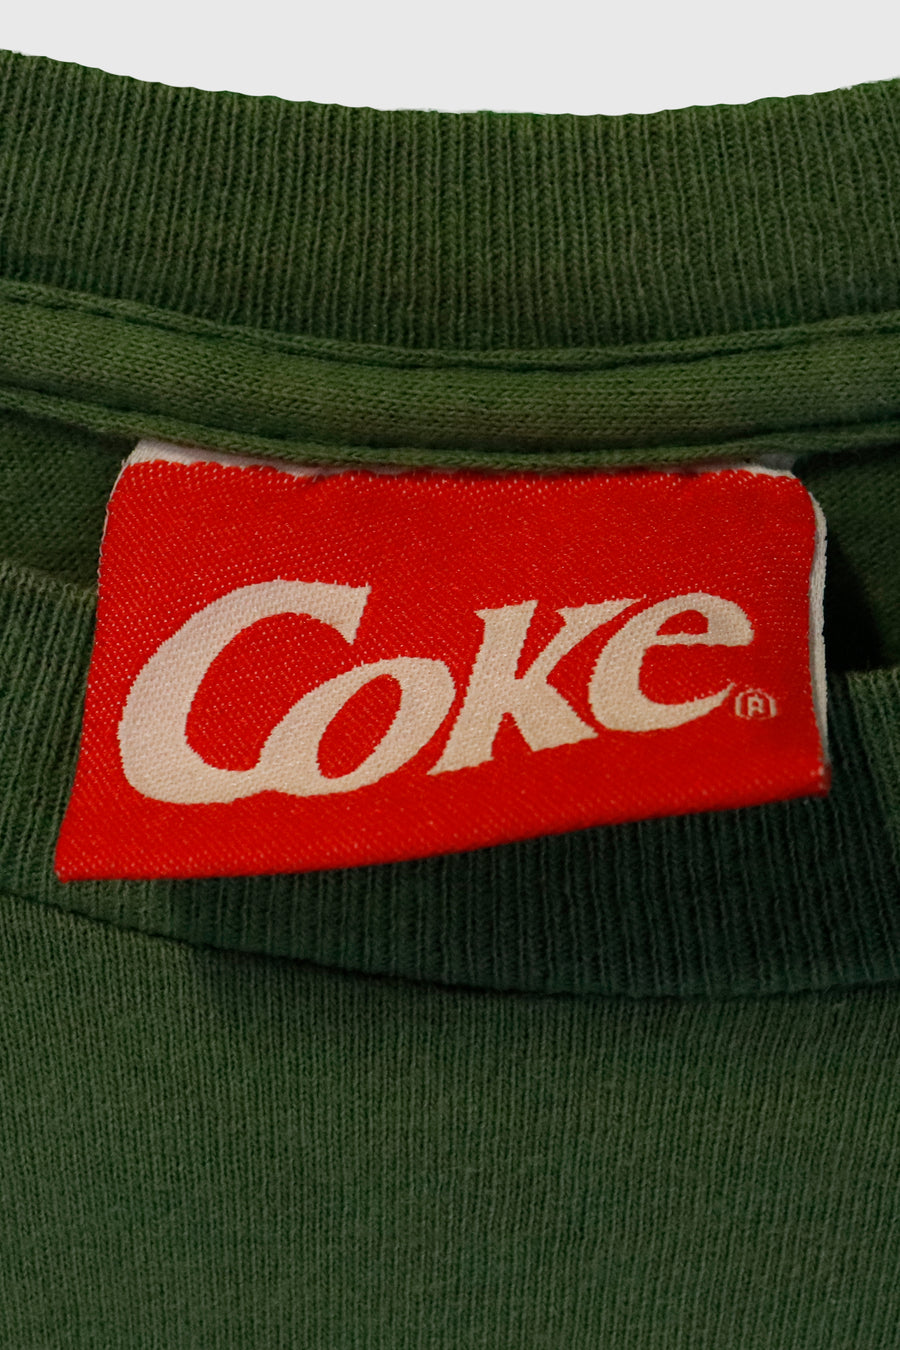 Vintage Coca-Cola Always Coca-Cola T Shirt Sz L